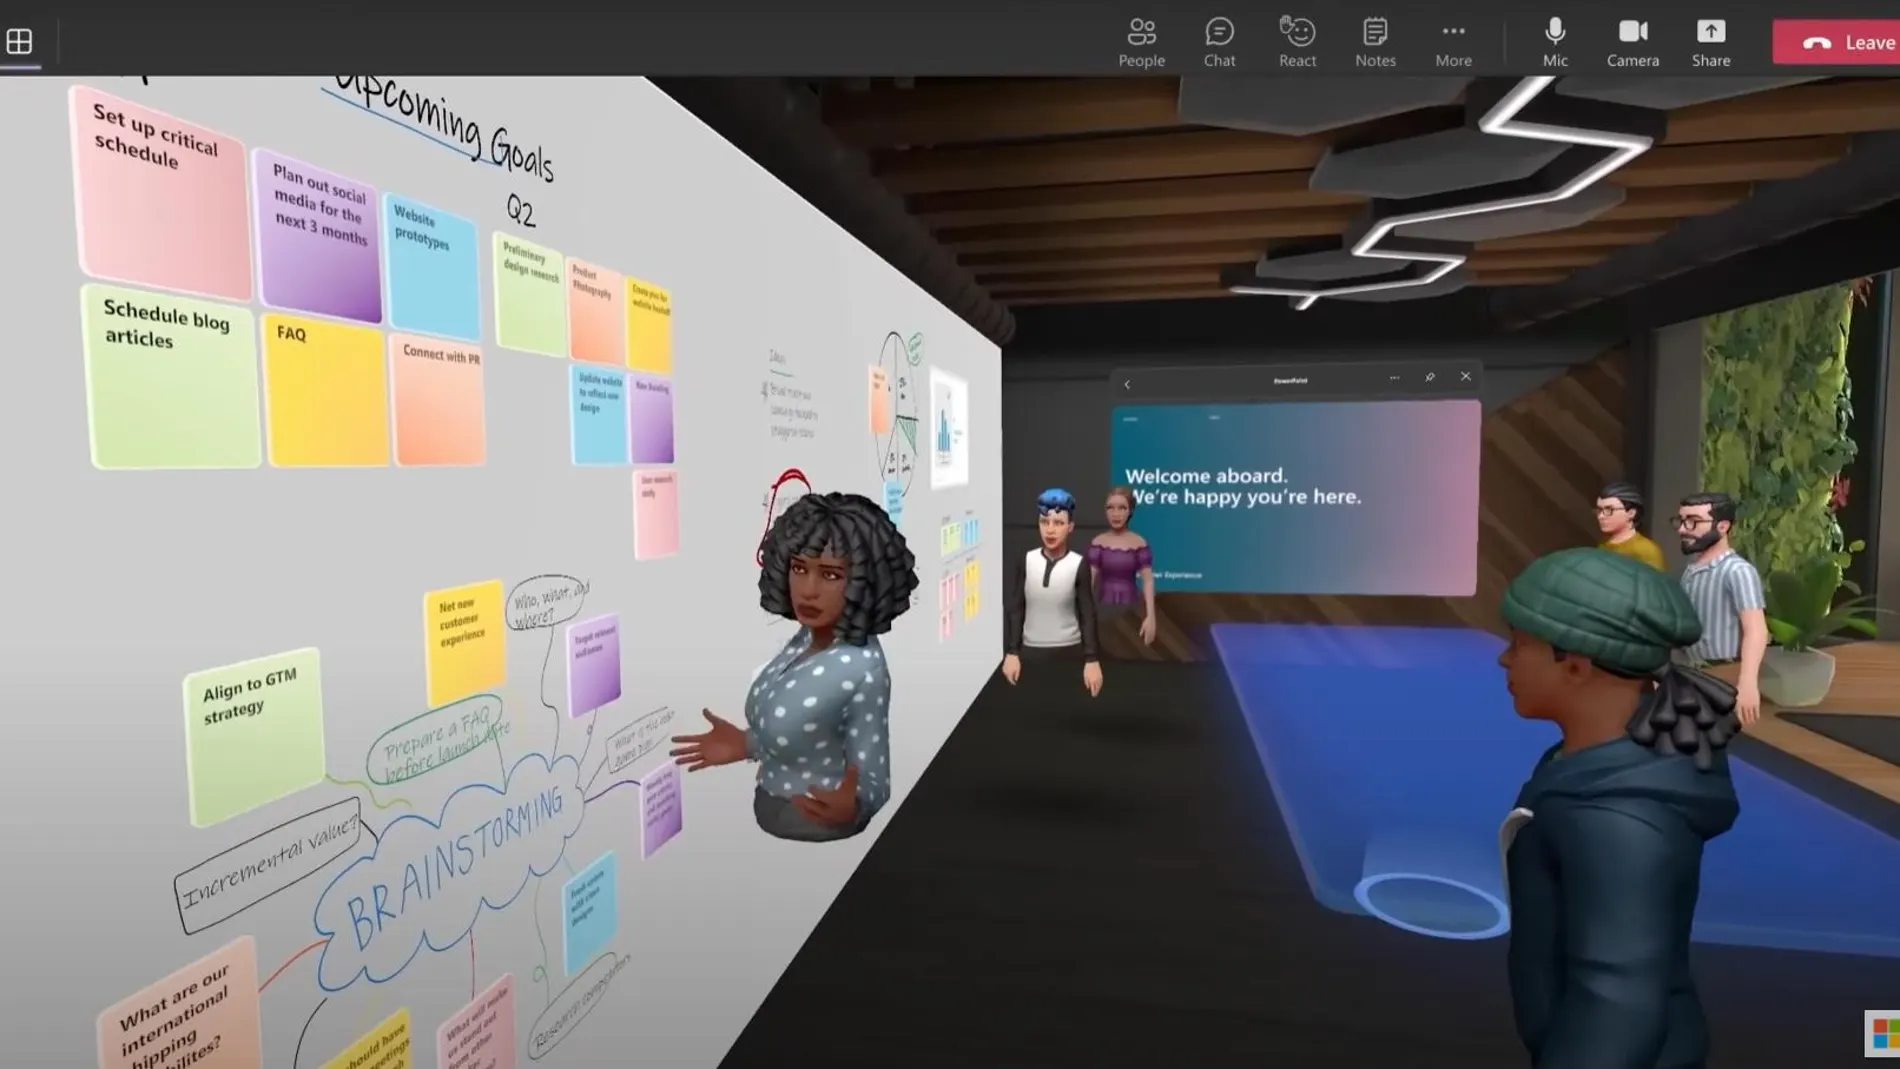 Reunión de trabajo en un entorno virtual a través de Microsoft Teams.